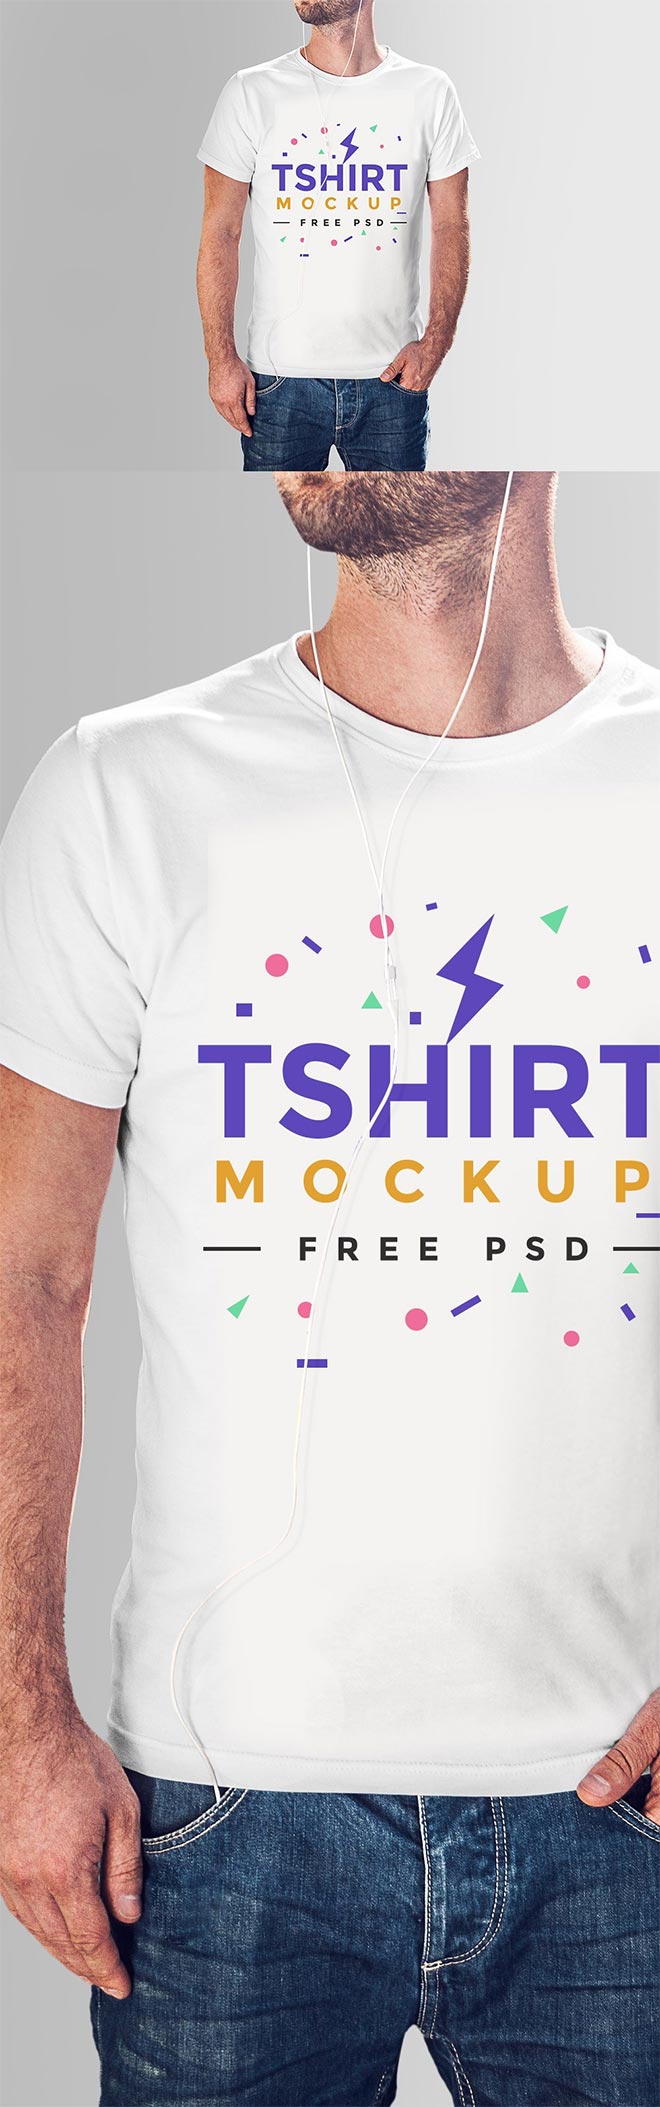 Free Tshirt Mockup PSD